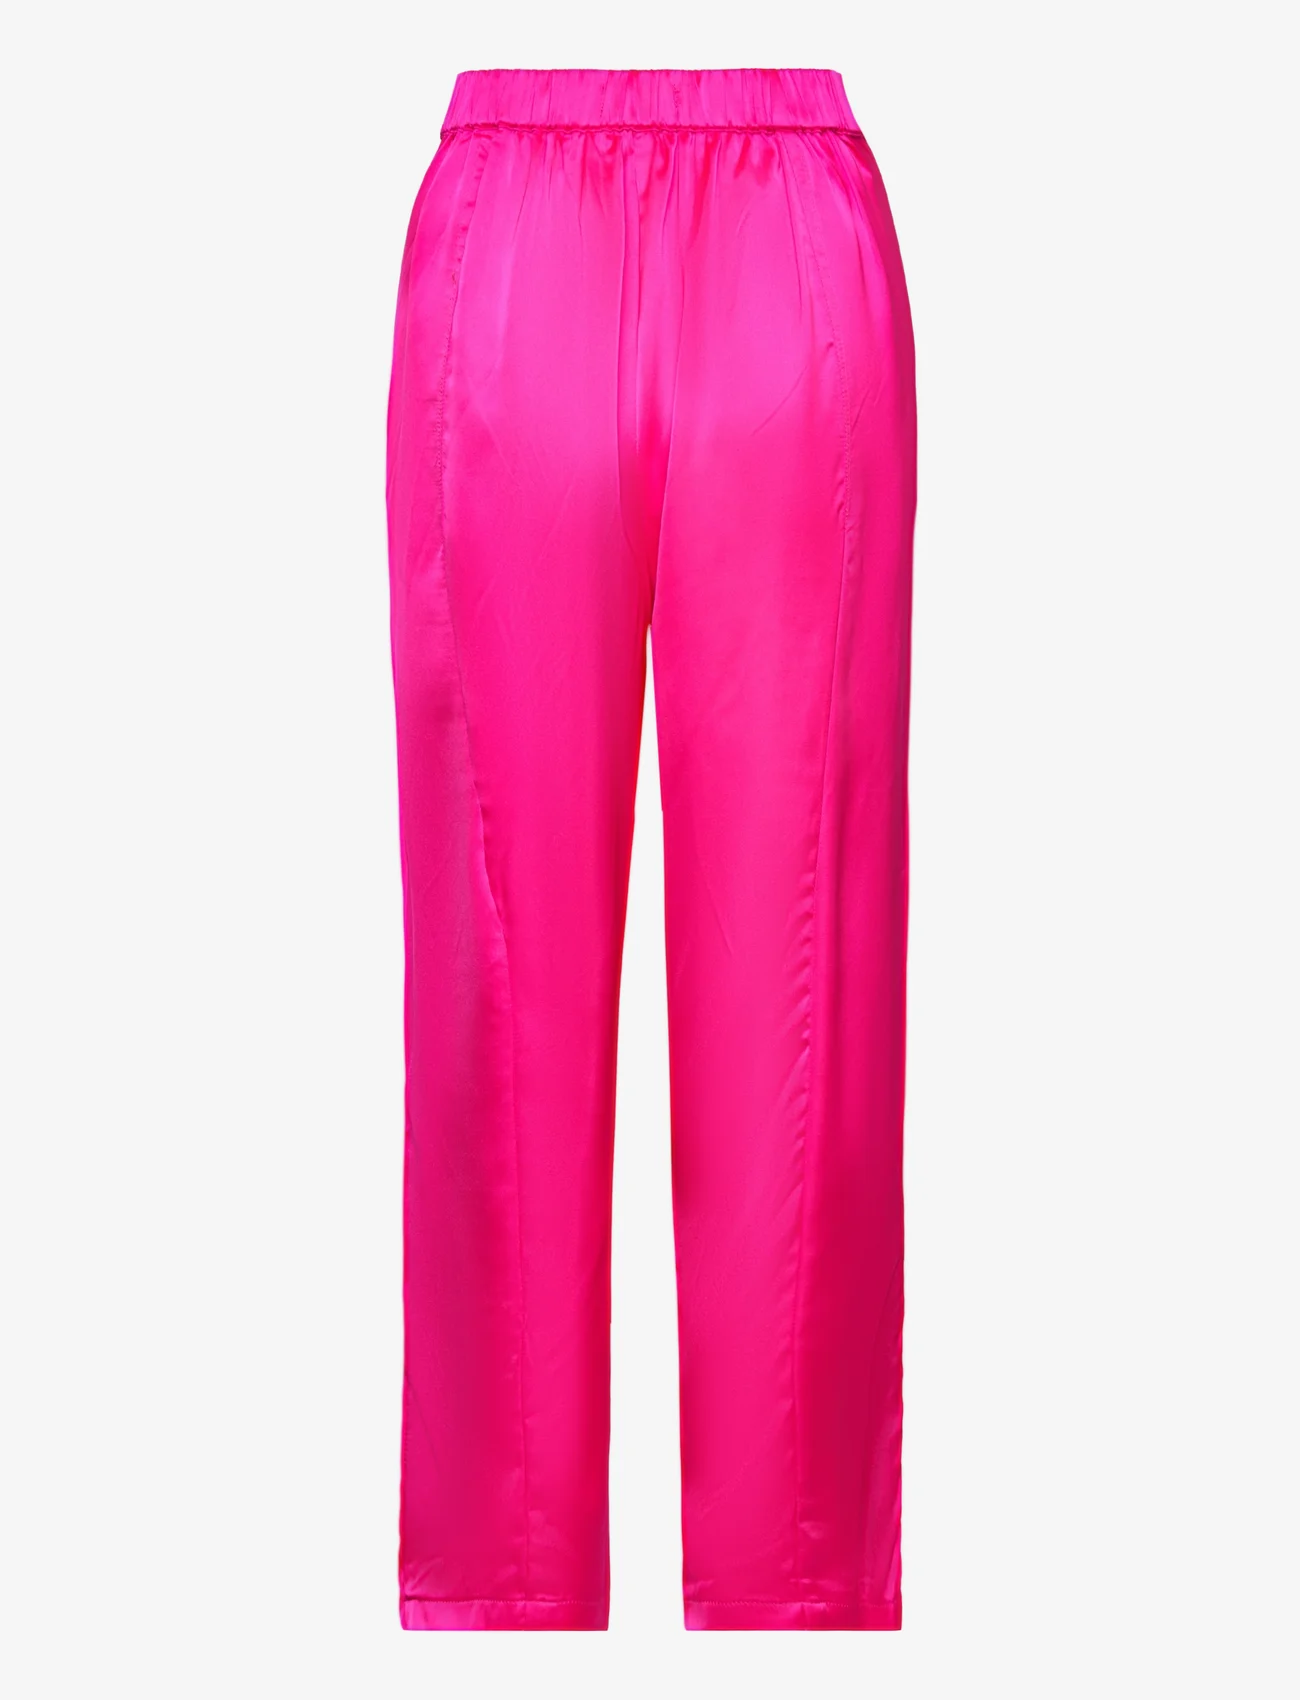 Lollys Laundry - Maisie Pants - tiesaus kirpimo kelnės - pink - 1